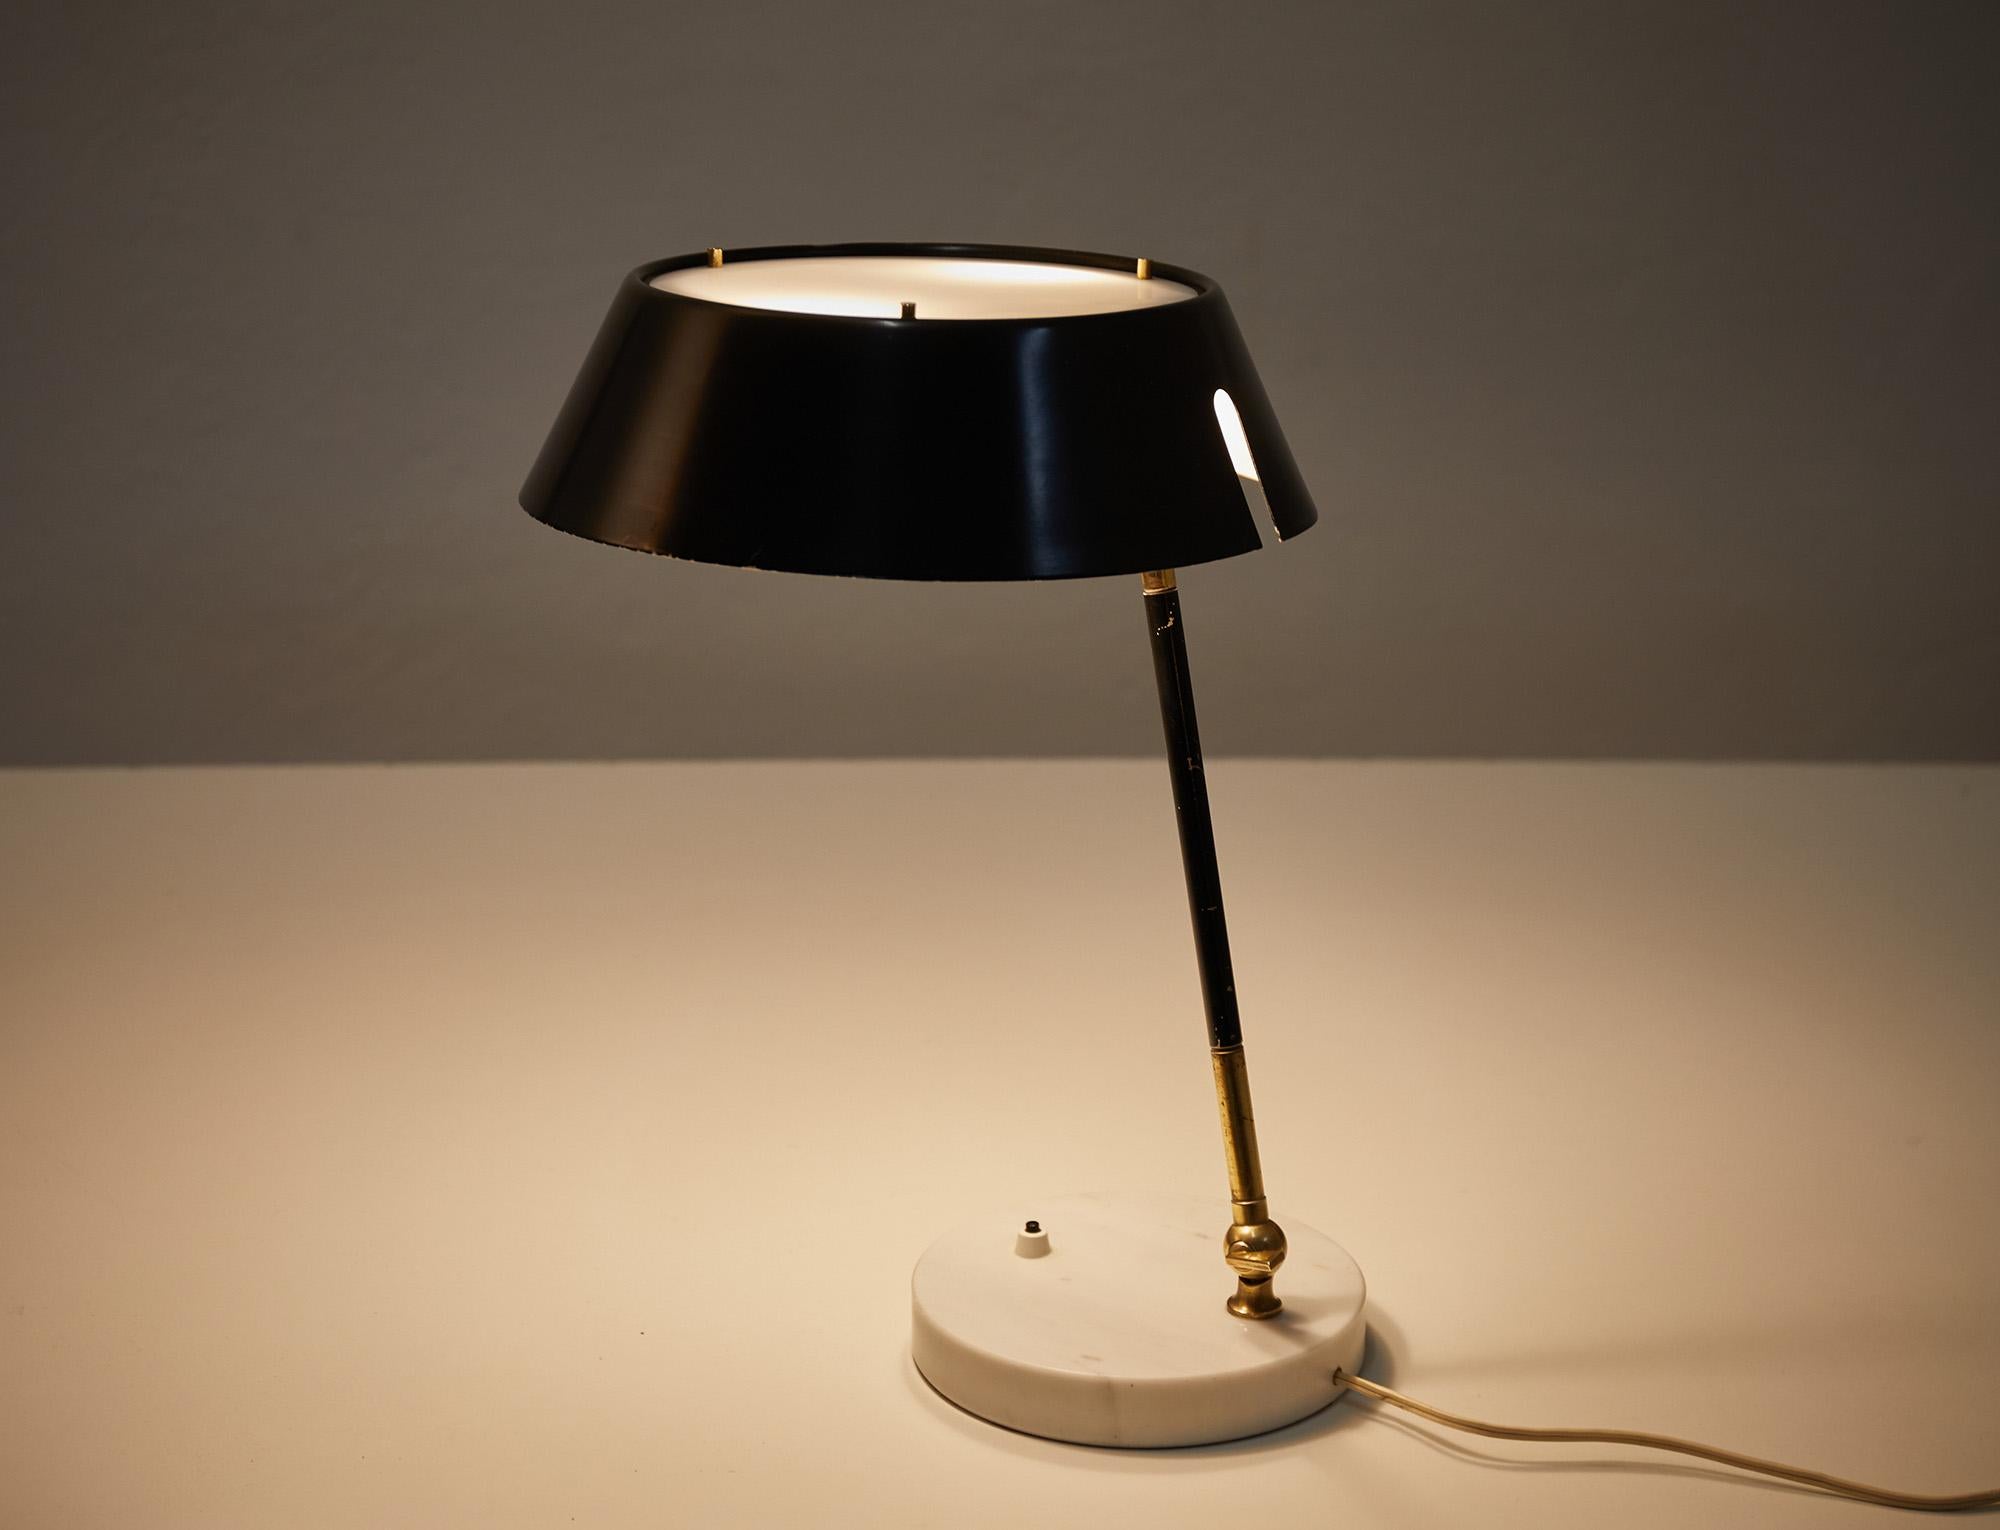 Élégante lampe de table ou de bureau réglable, conçue et fabriquée par Stilux, Italie, vers 1960. 

La lampe comporte un abat-jour rond en métal noir avec sur le dessus un diffuseur en plexiglas pour un effet de lumière douce. La tige en laiton avec